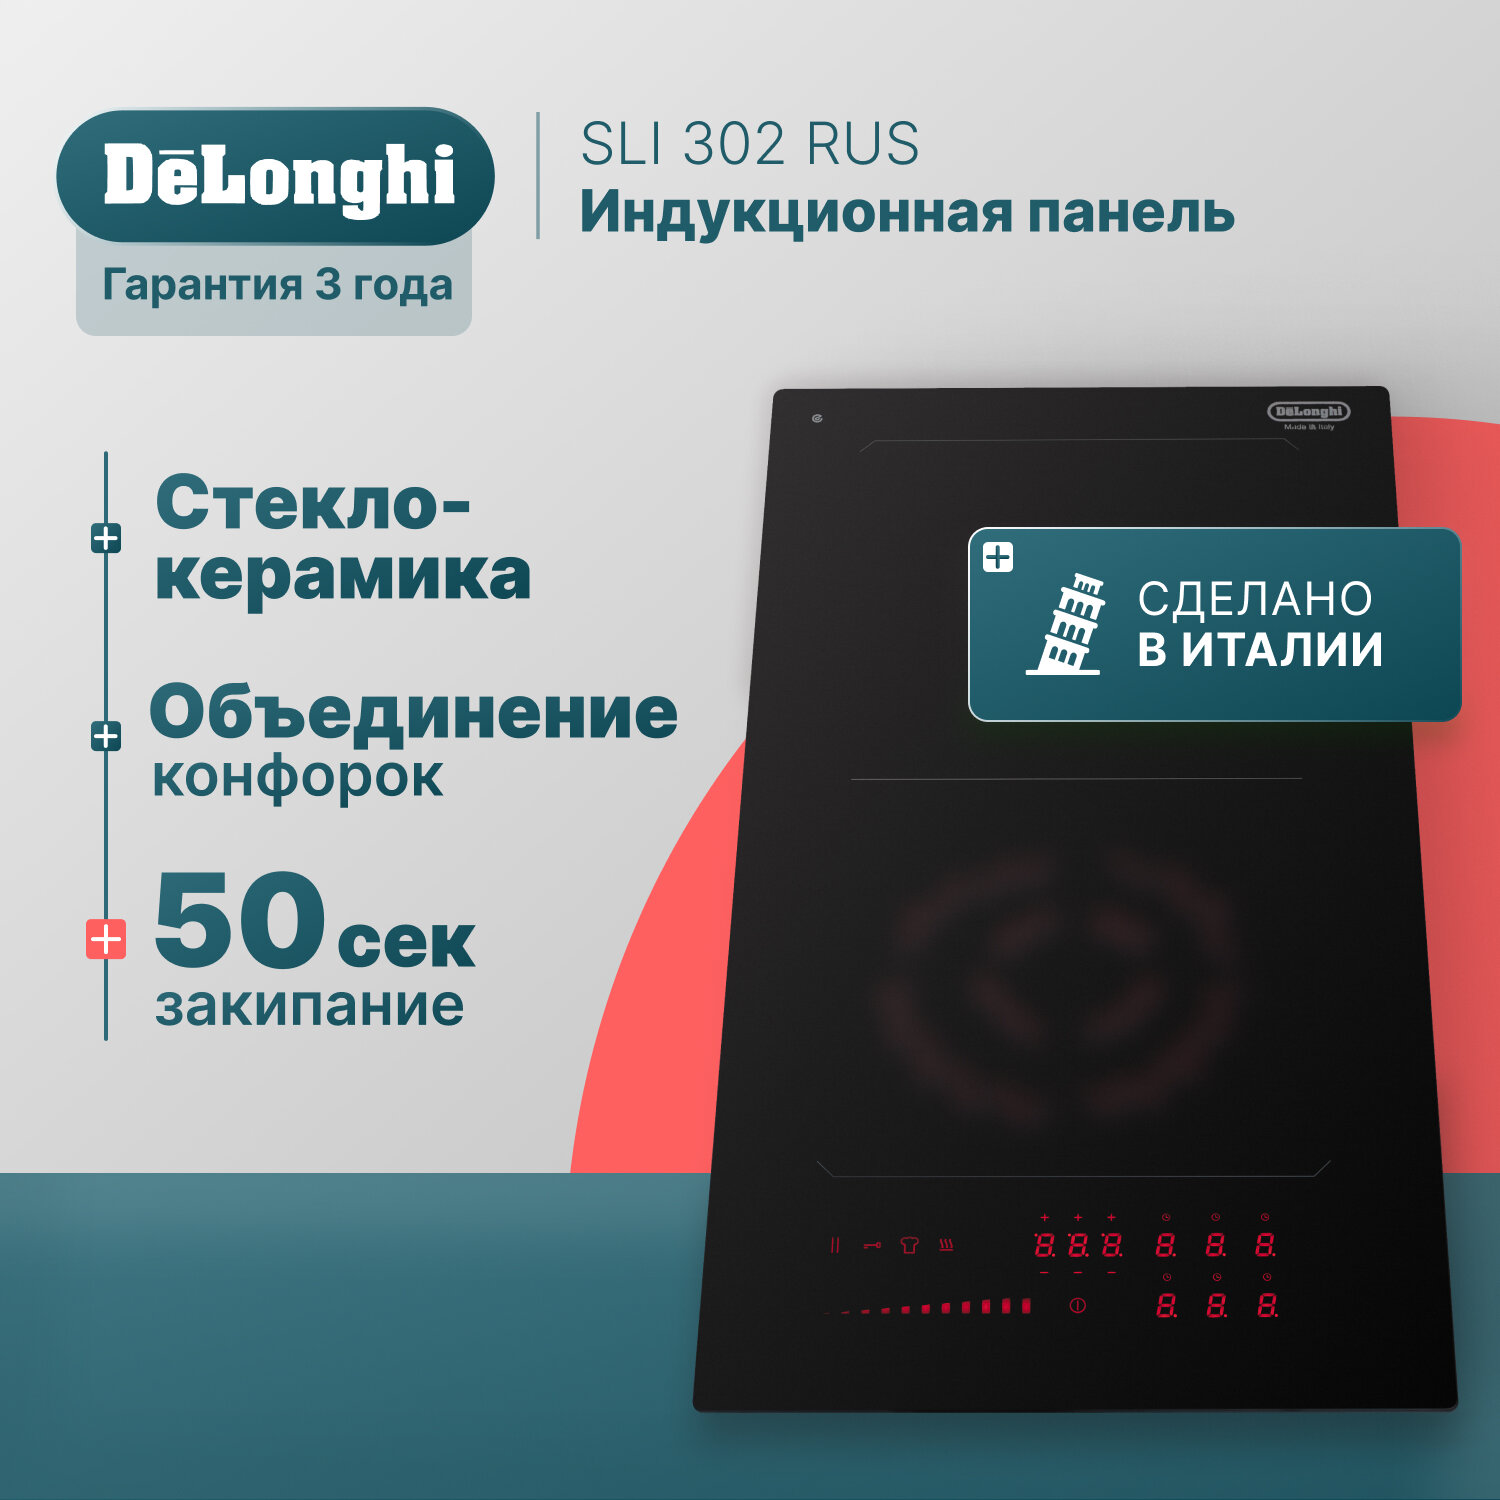 Индукционная варочная панель DeLonghi SLI 302 RUS, 30 см, черная, индикатор остаточного тепла, Bridge function, сенсорное управление - фото №1